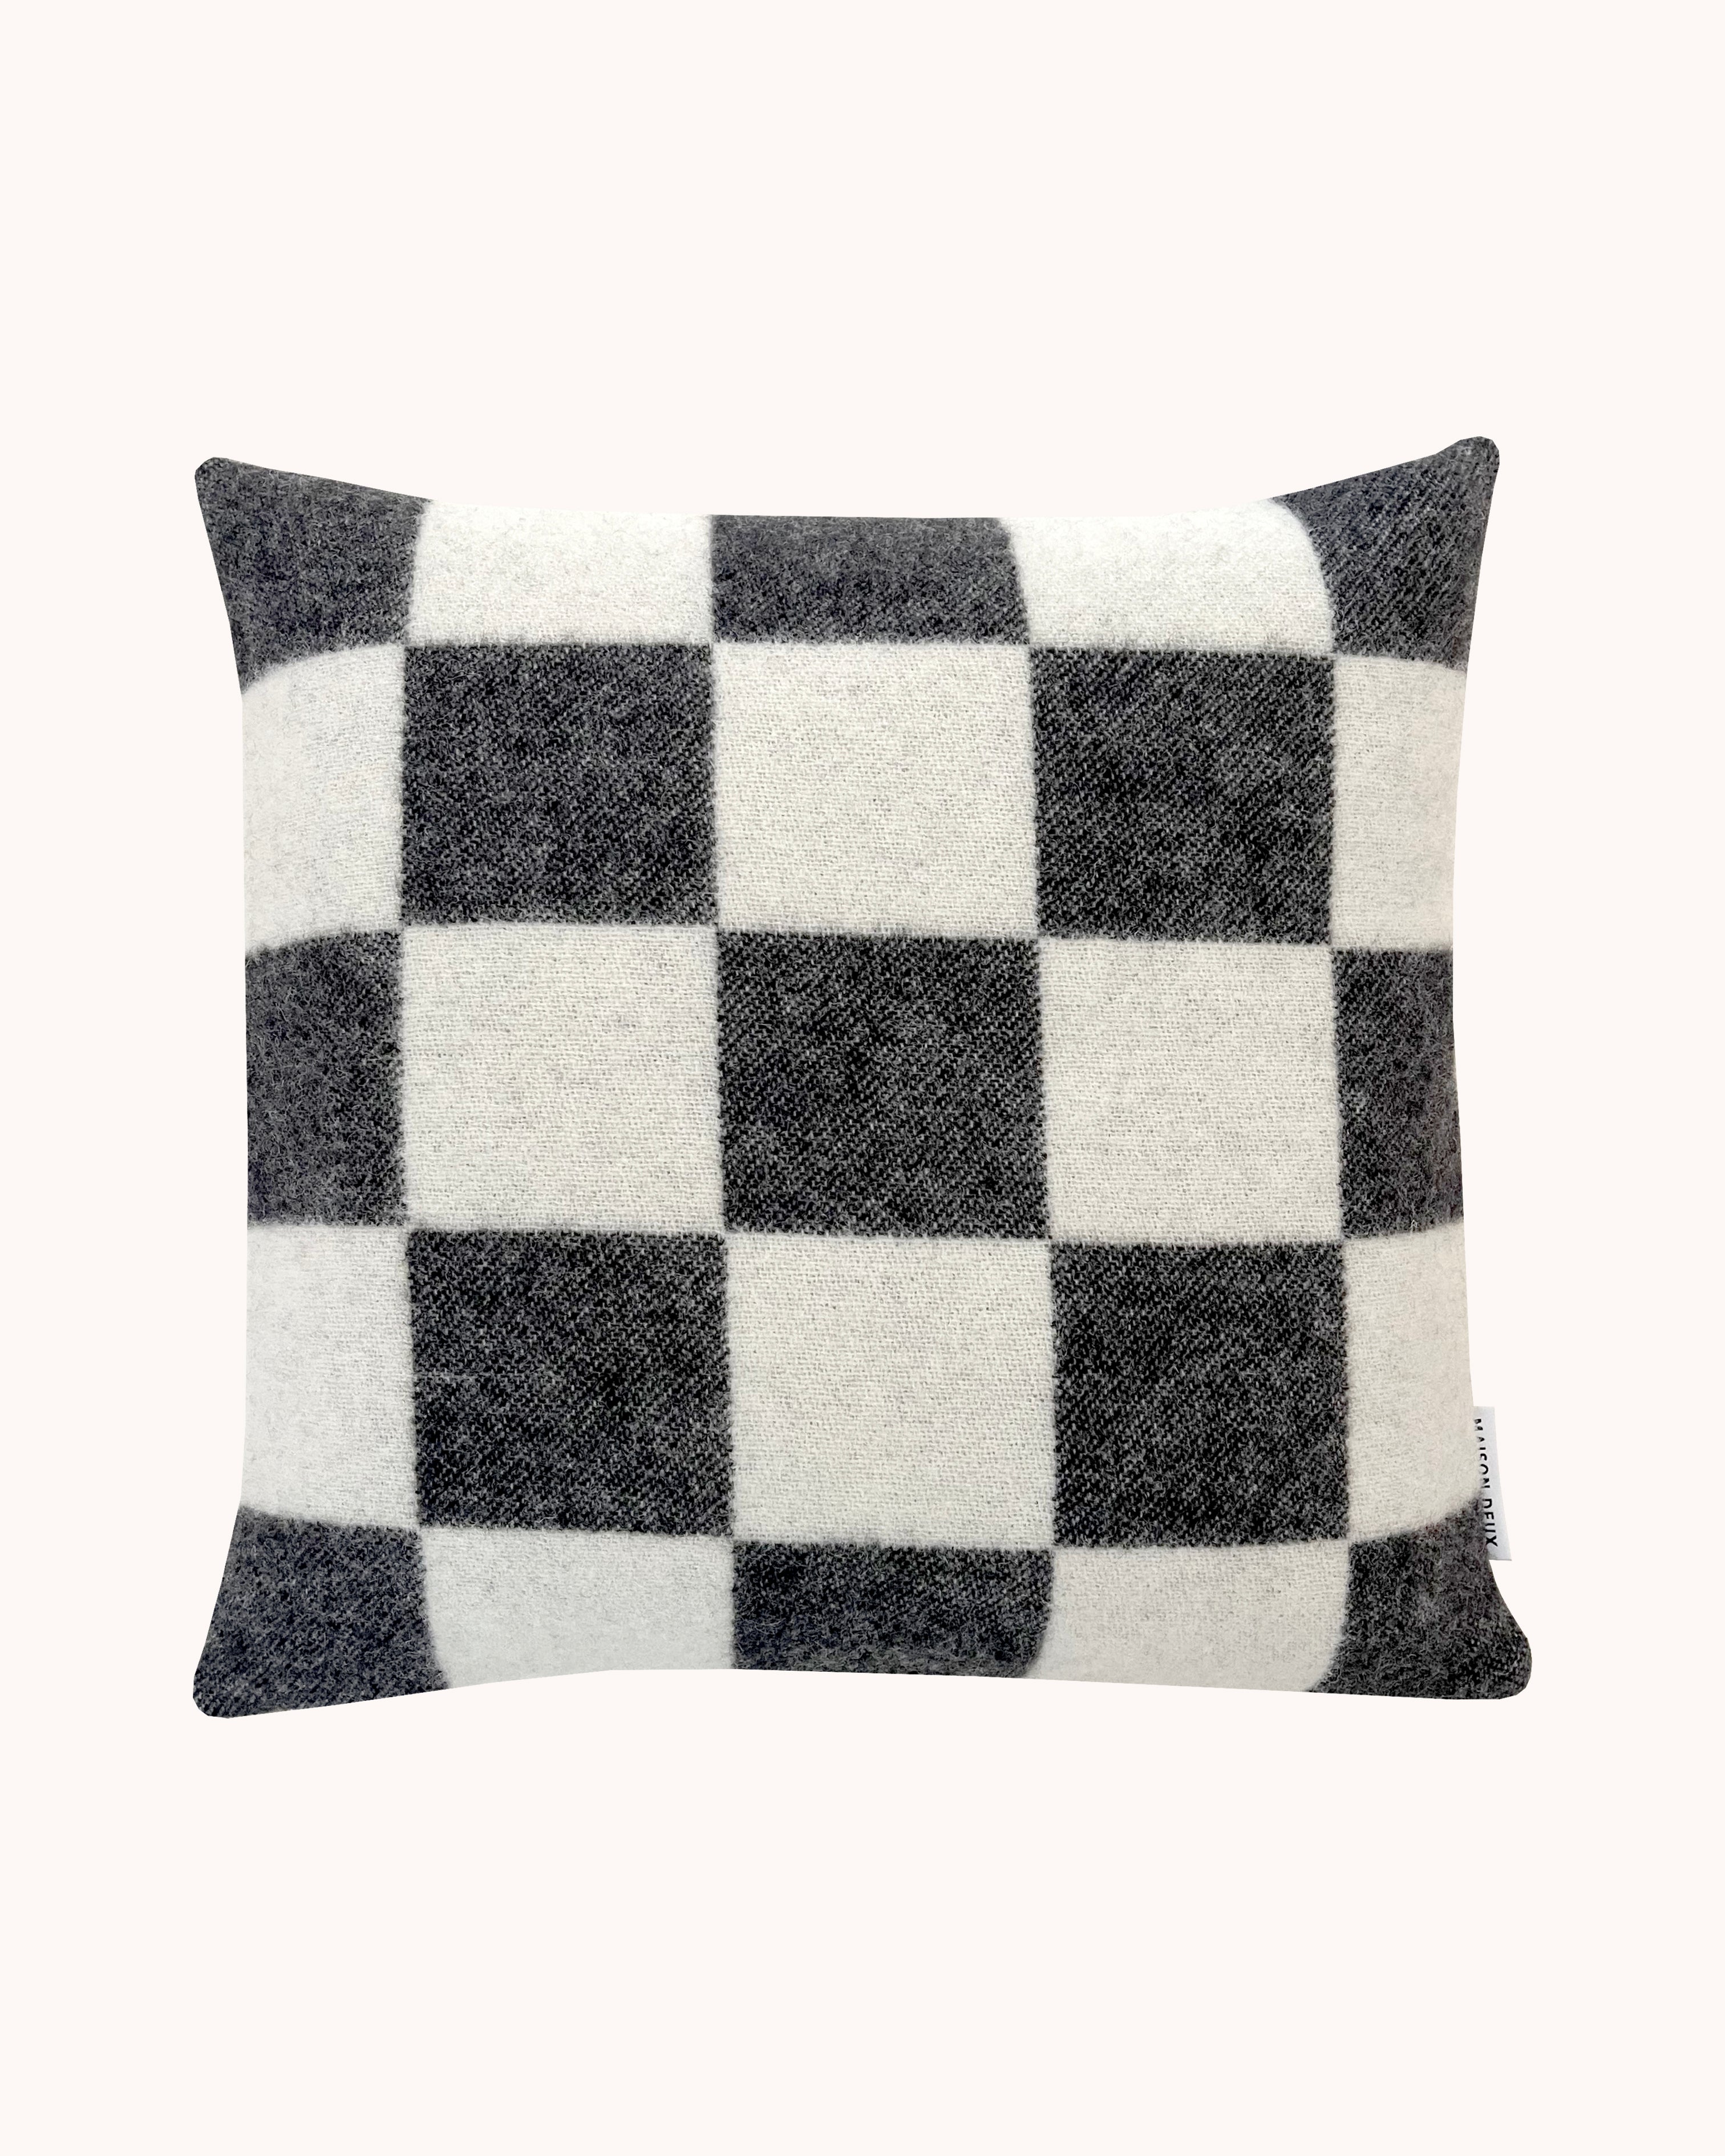 Checkerboard Cushion - Black White